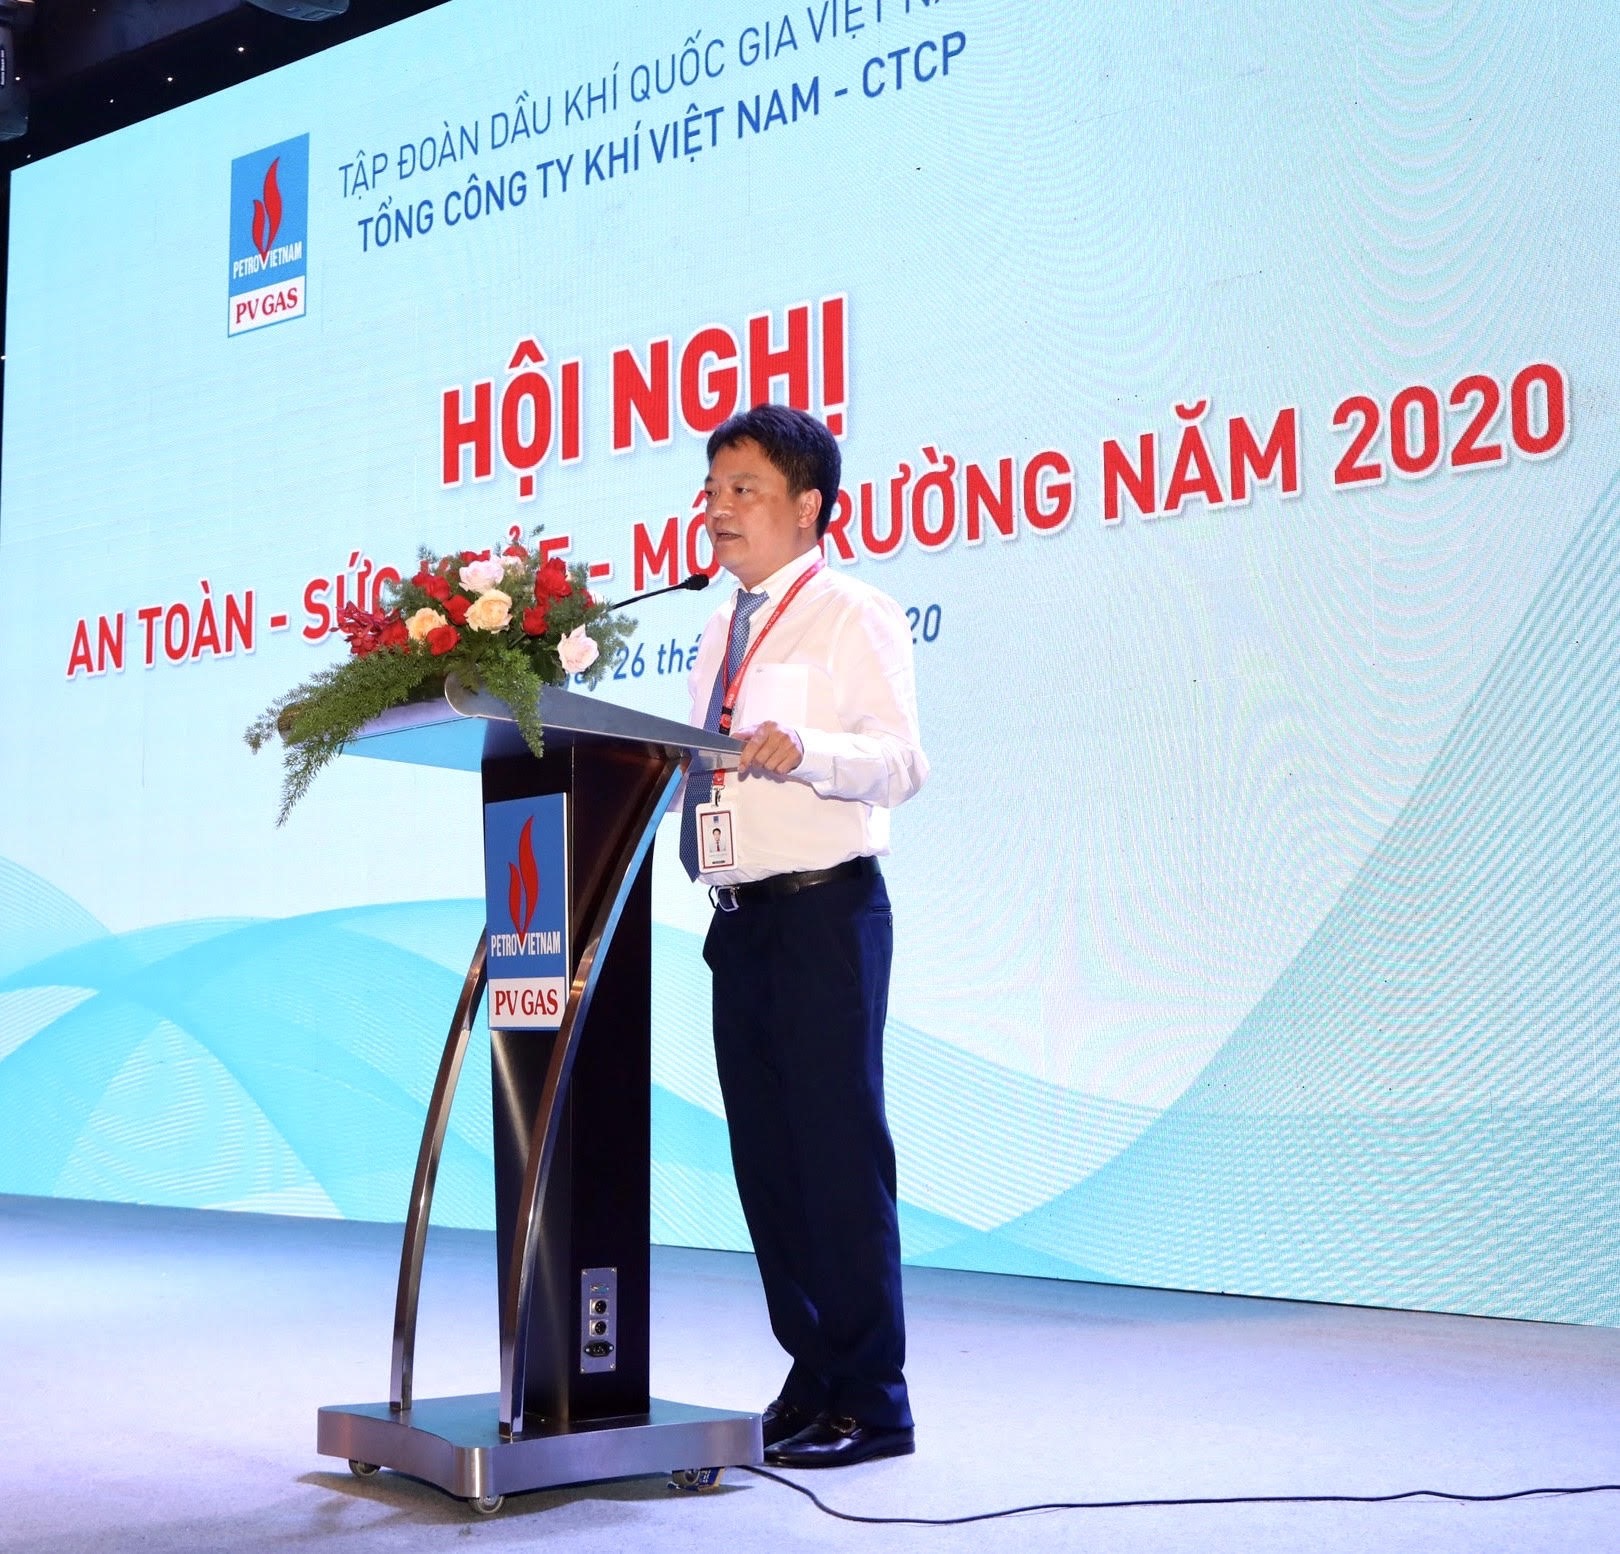 Ông Hoàng Văn Quang  PTGĐ PV GAS kết luận hội nghị.